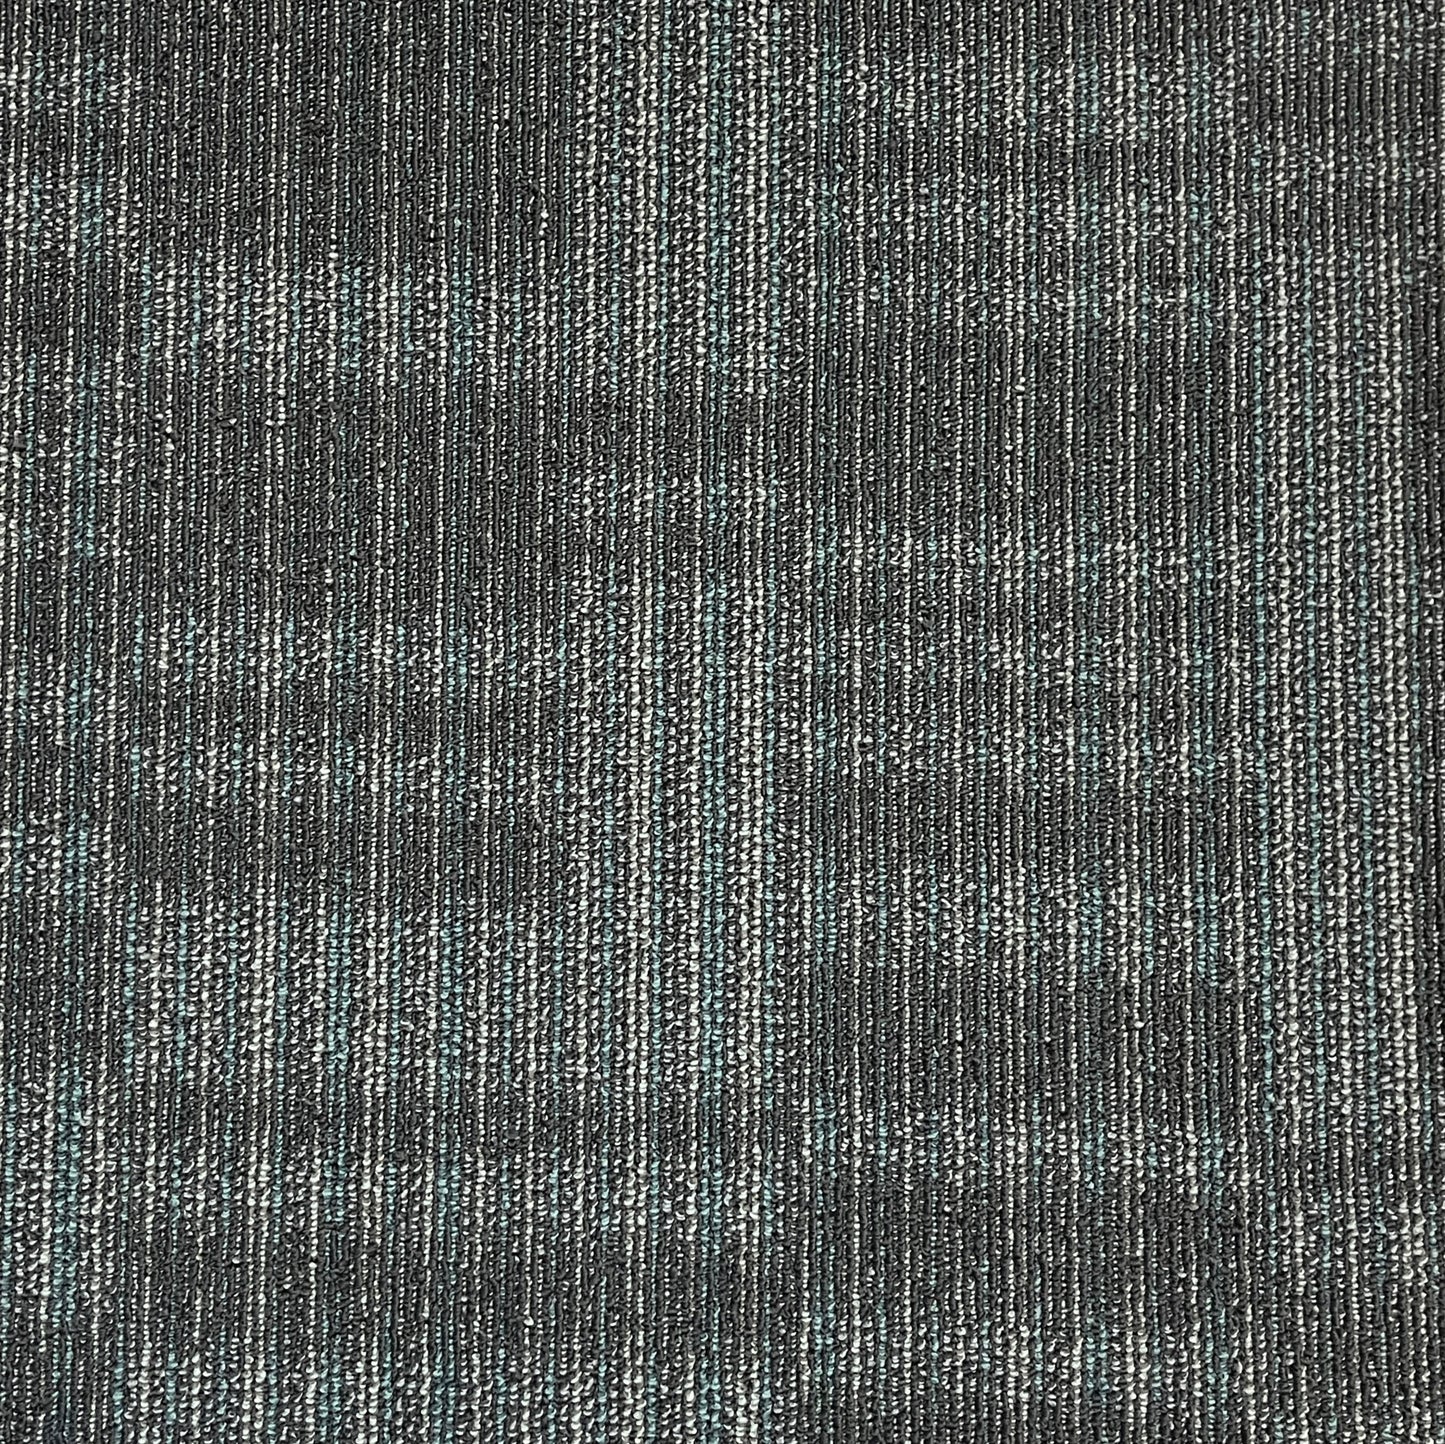 Shaw Blue Gray Carpet Tile-24"x 24"(12 Tiles/case, 48 sq. ft./case)